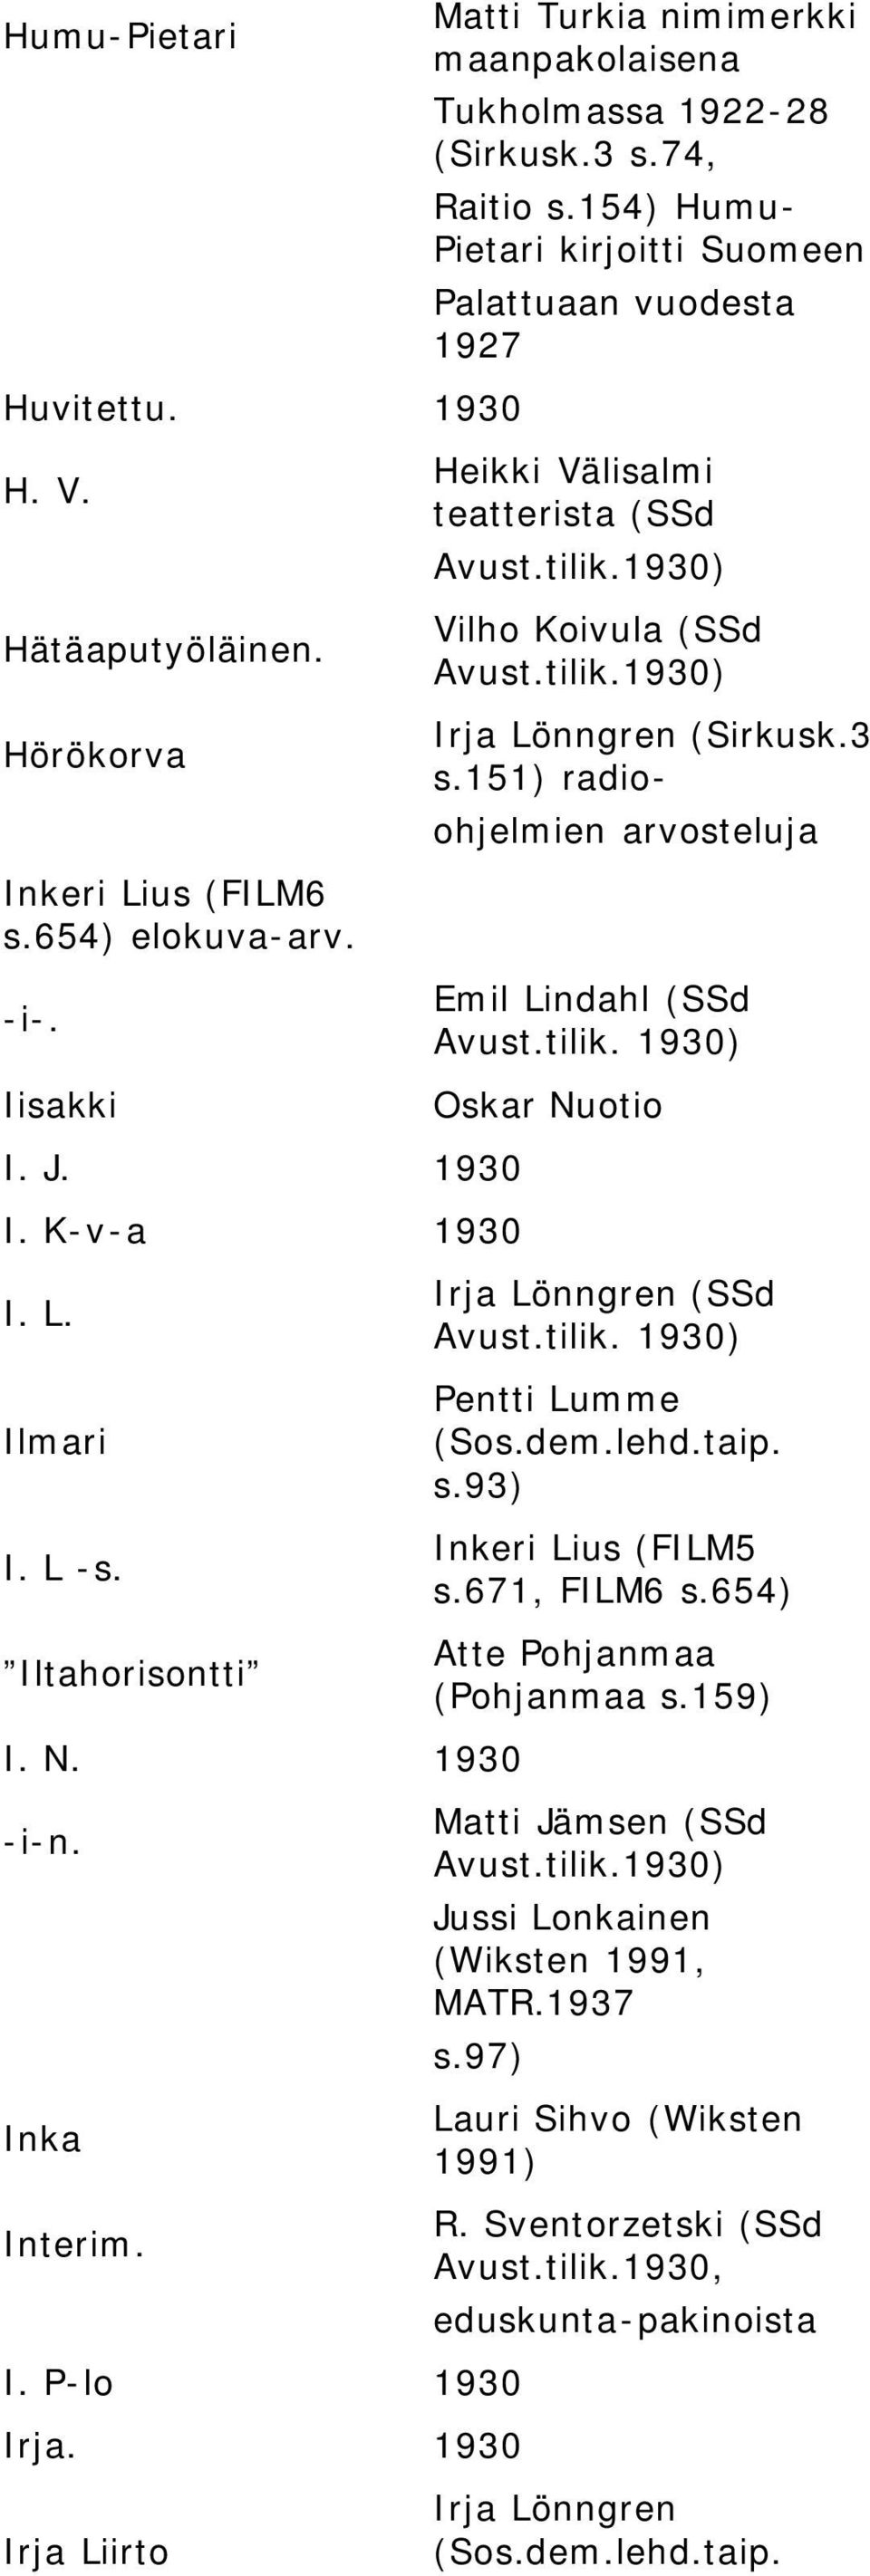 154) Humu- Pietari kirjoitti Suomeen Palattuaan vuodesta 1927 Heikki Välisalmi teatterista (SSd Vilho Koivula (SSd Irja Lönngren (Sirkusk.3 s.